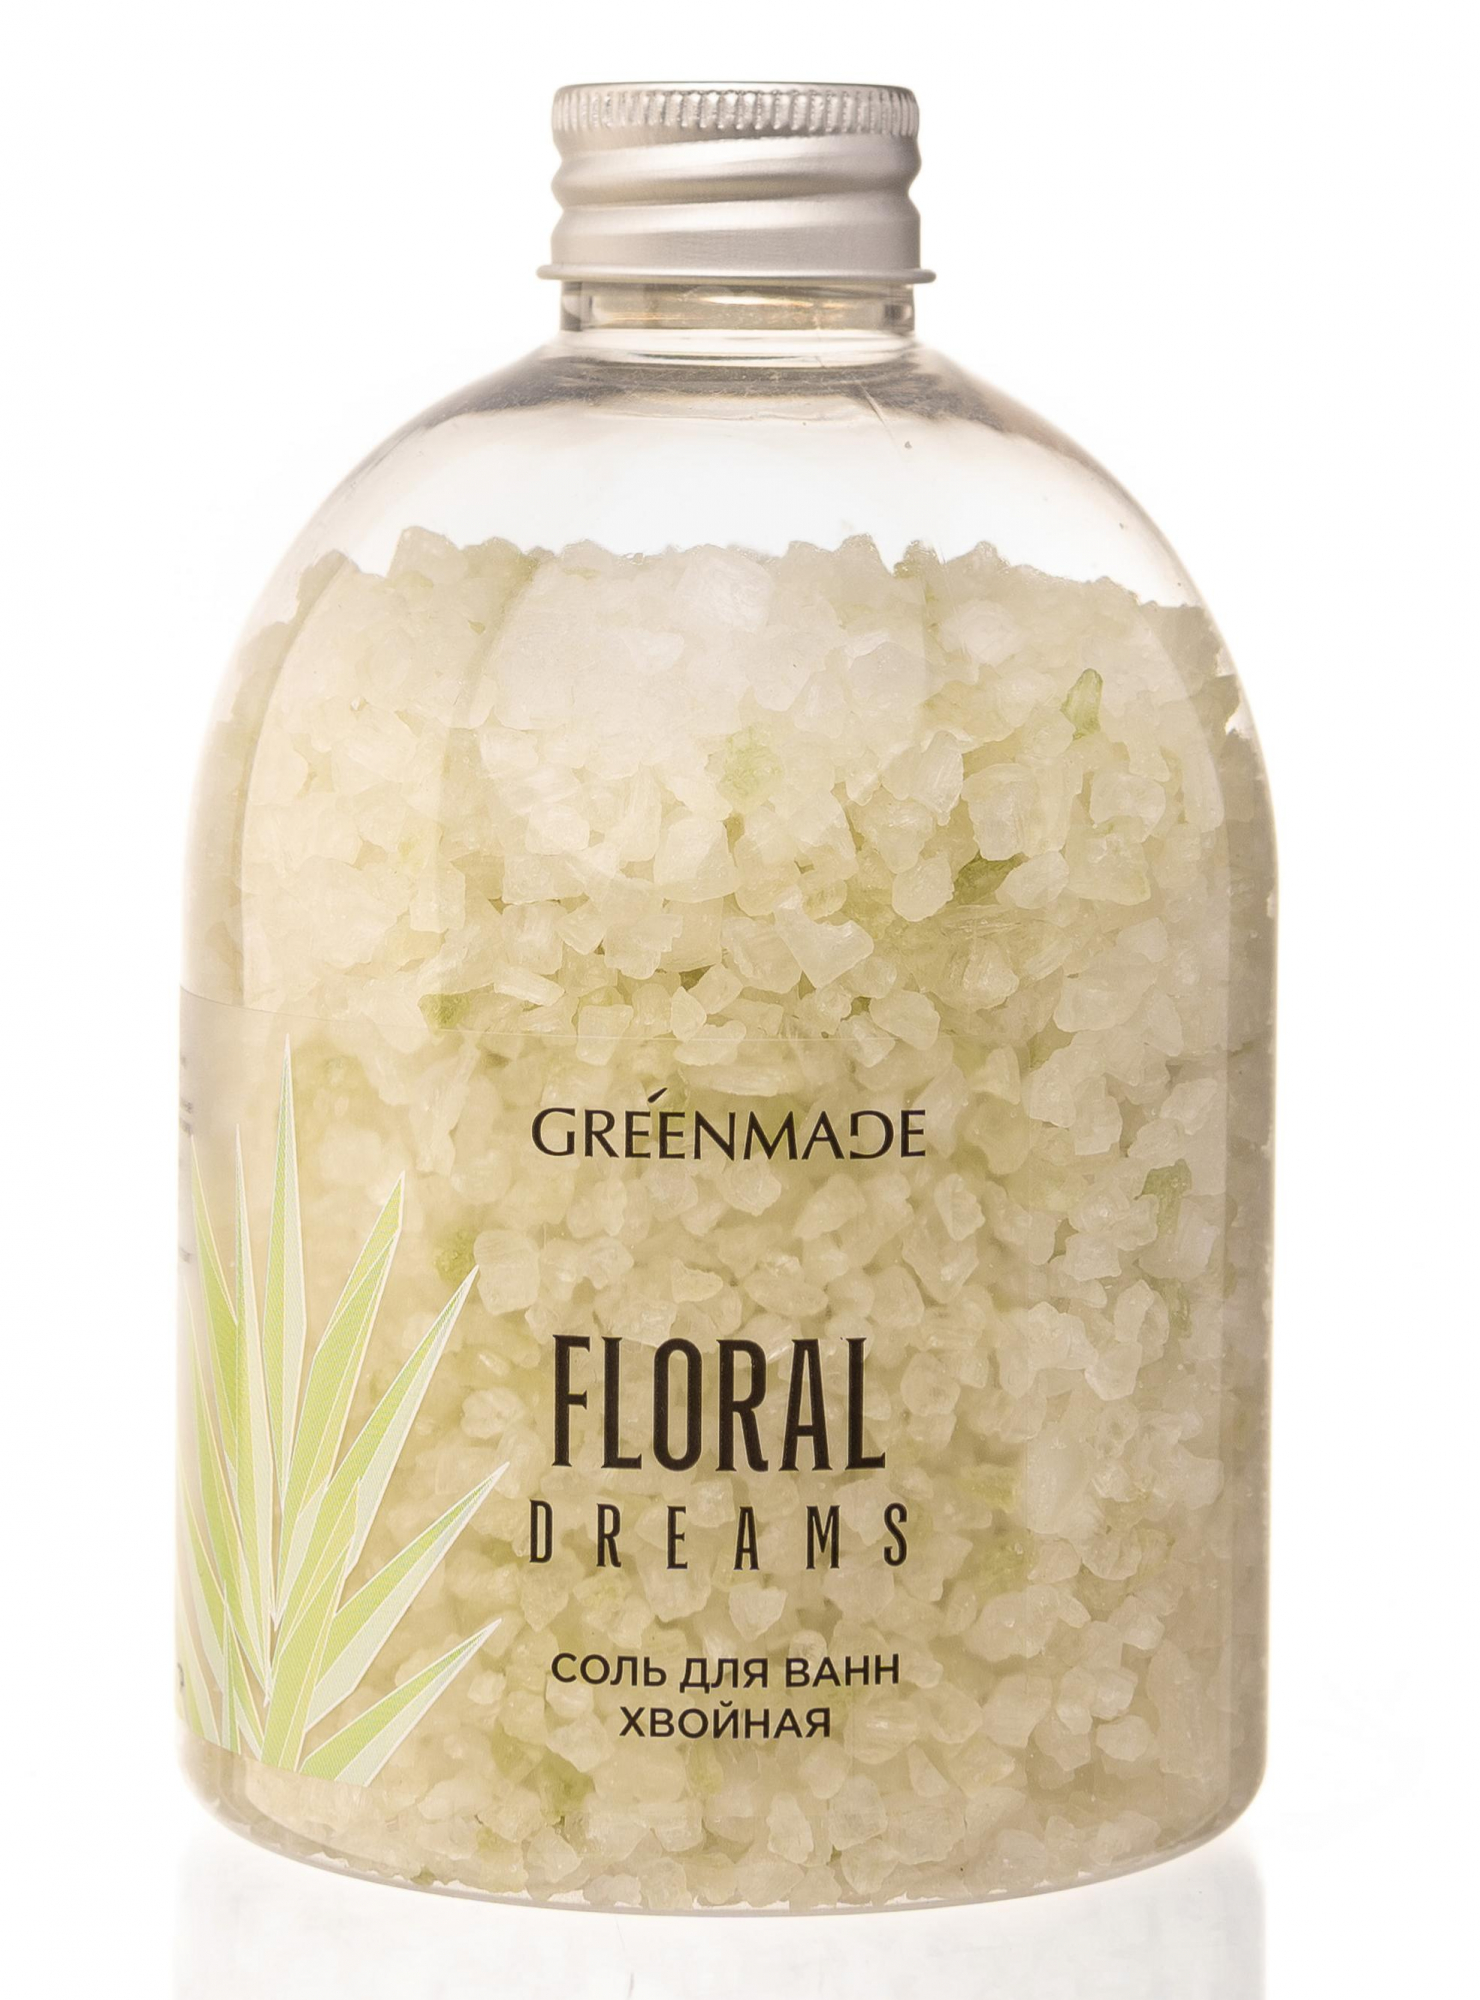 G Соль для ванн хвойная Floral dreams купить в онлайн экомаркете